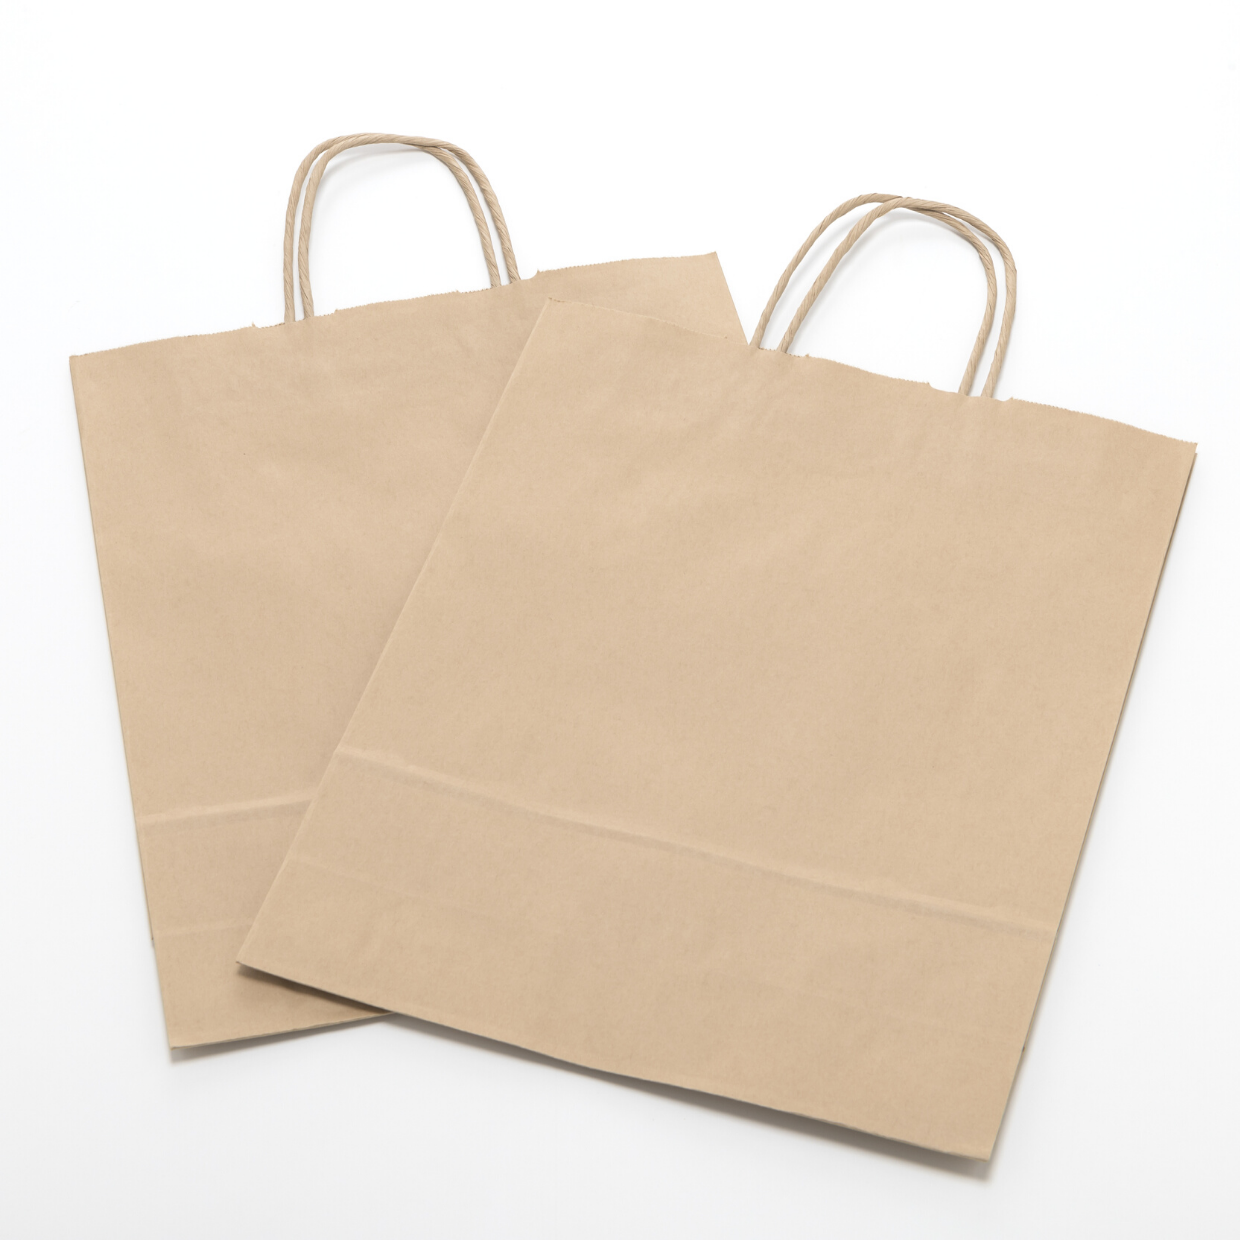  たまりがちな「紙袋」捨てたら損！知って得する“3つの便利な活用術” 